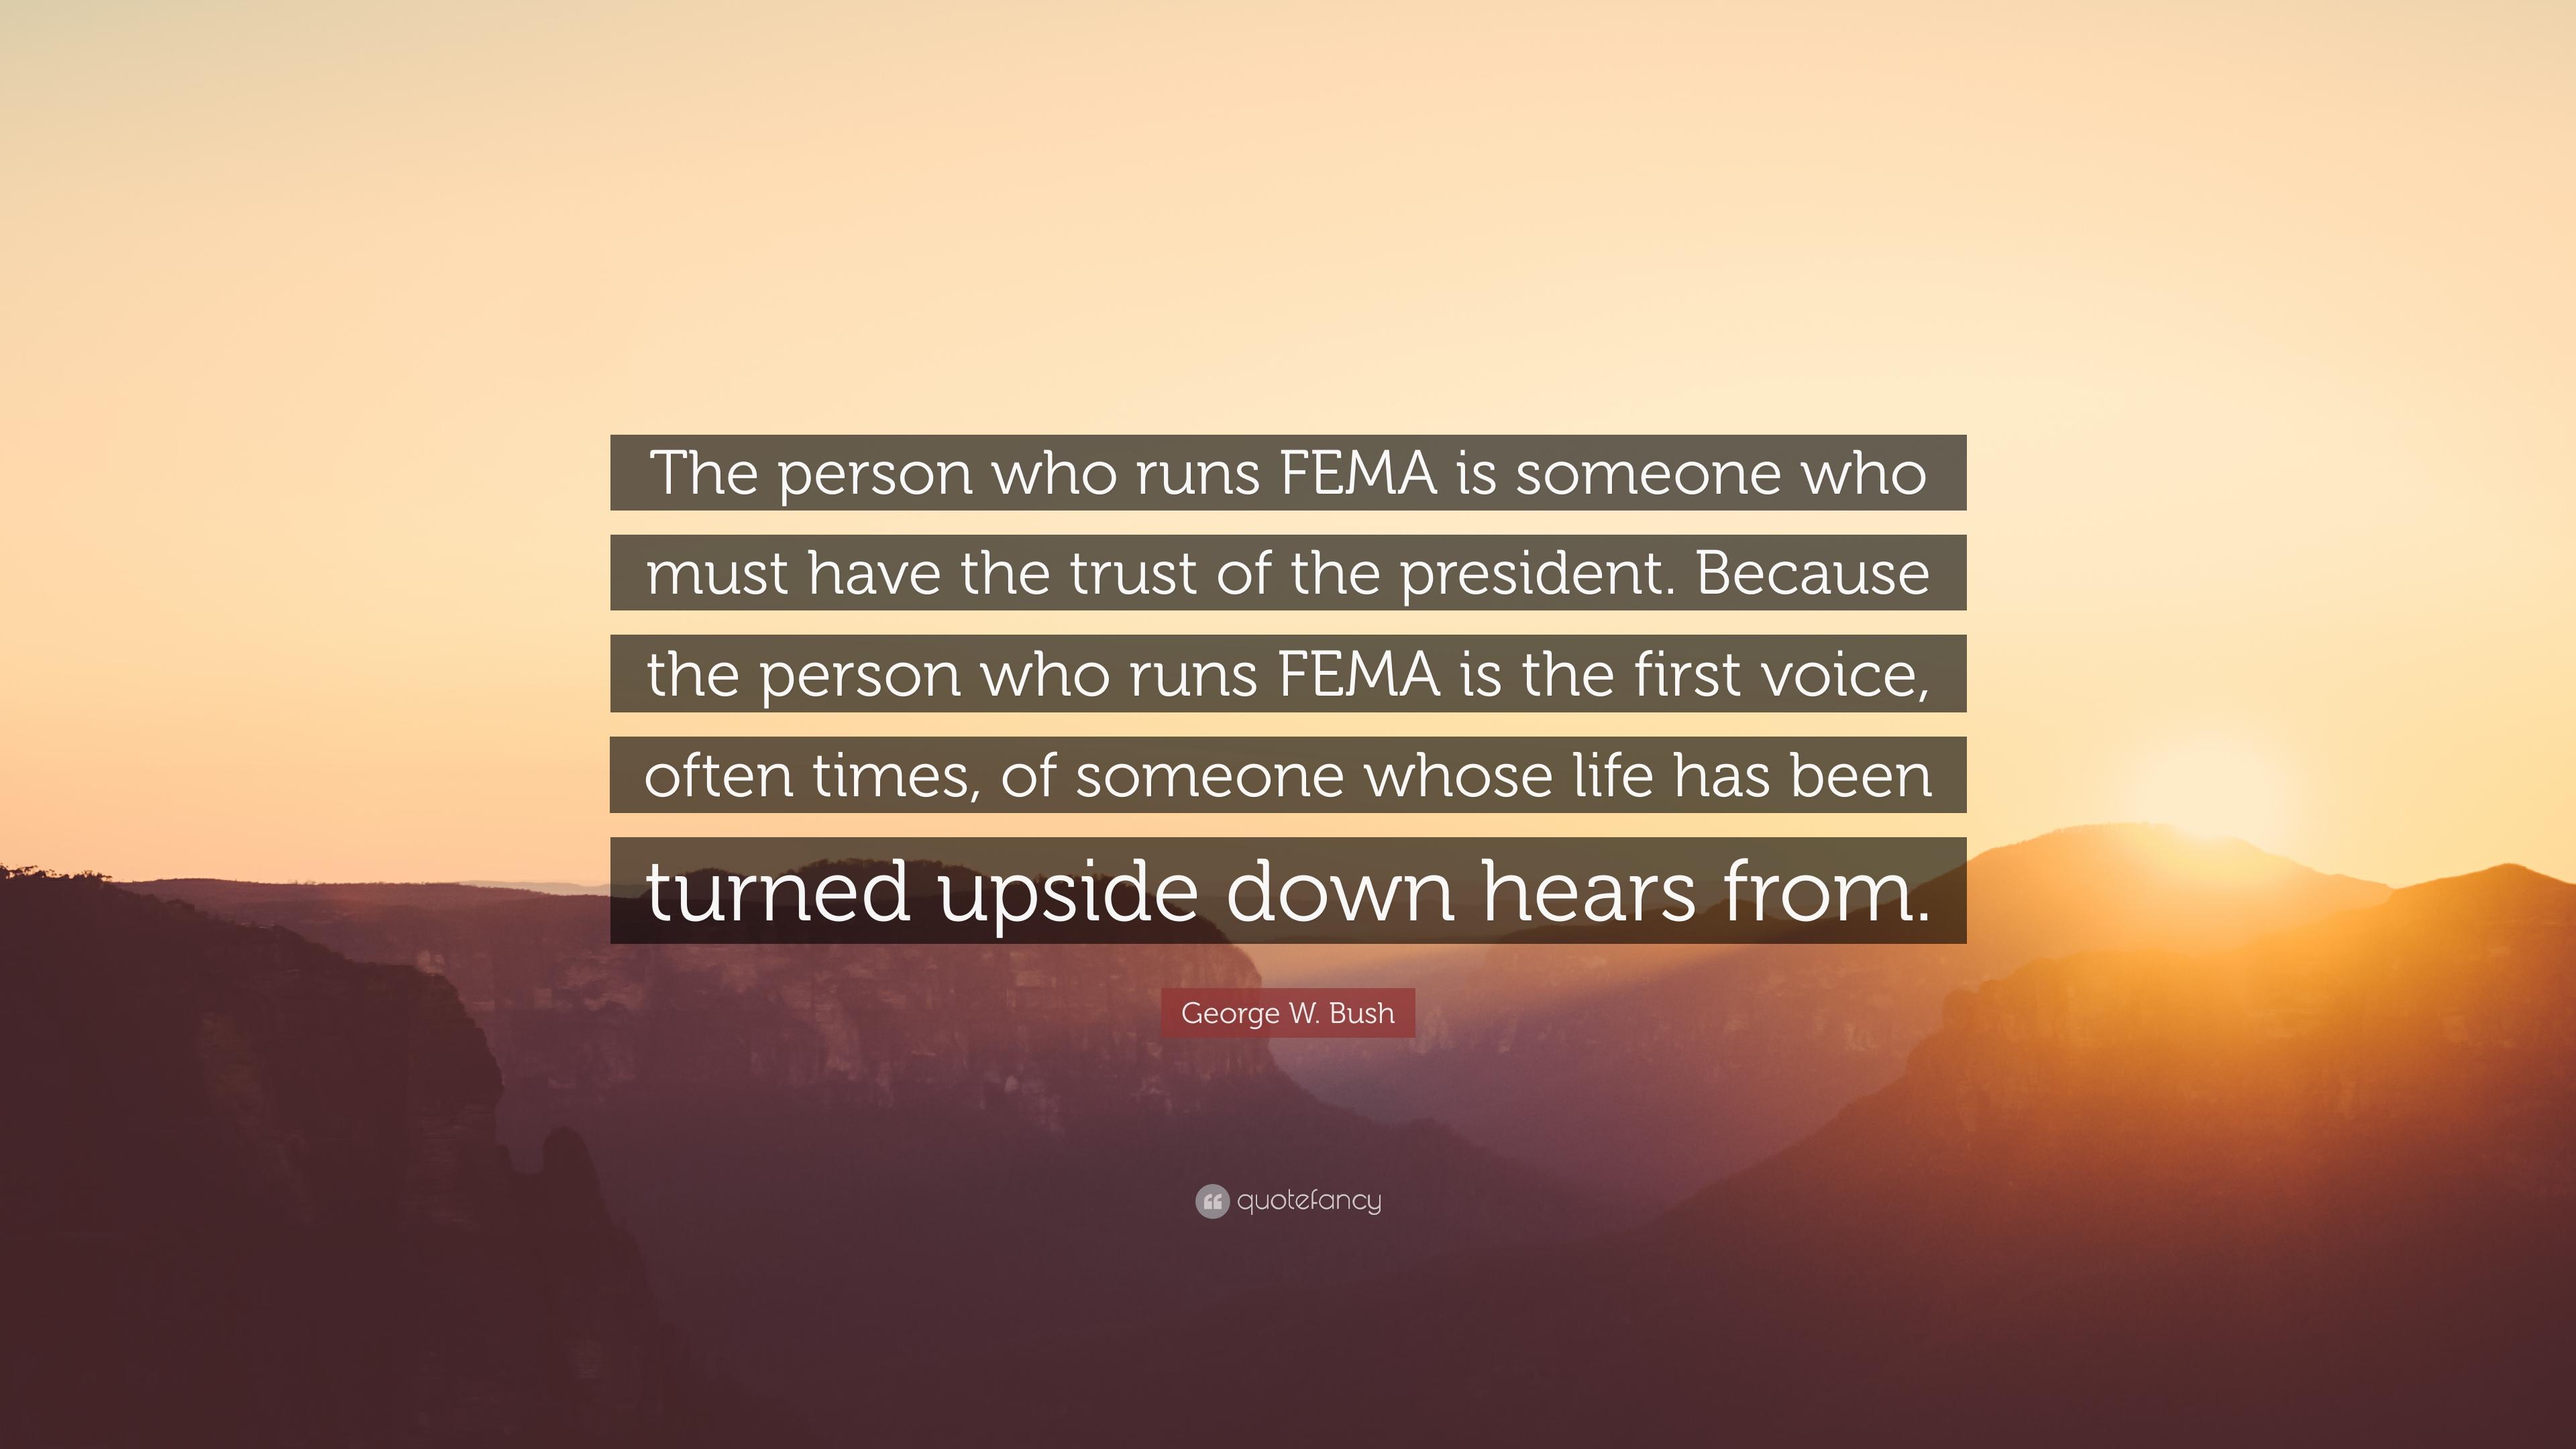 George W. Bush Quote: “The person who runs FEMA is someone